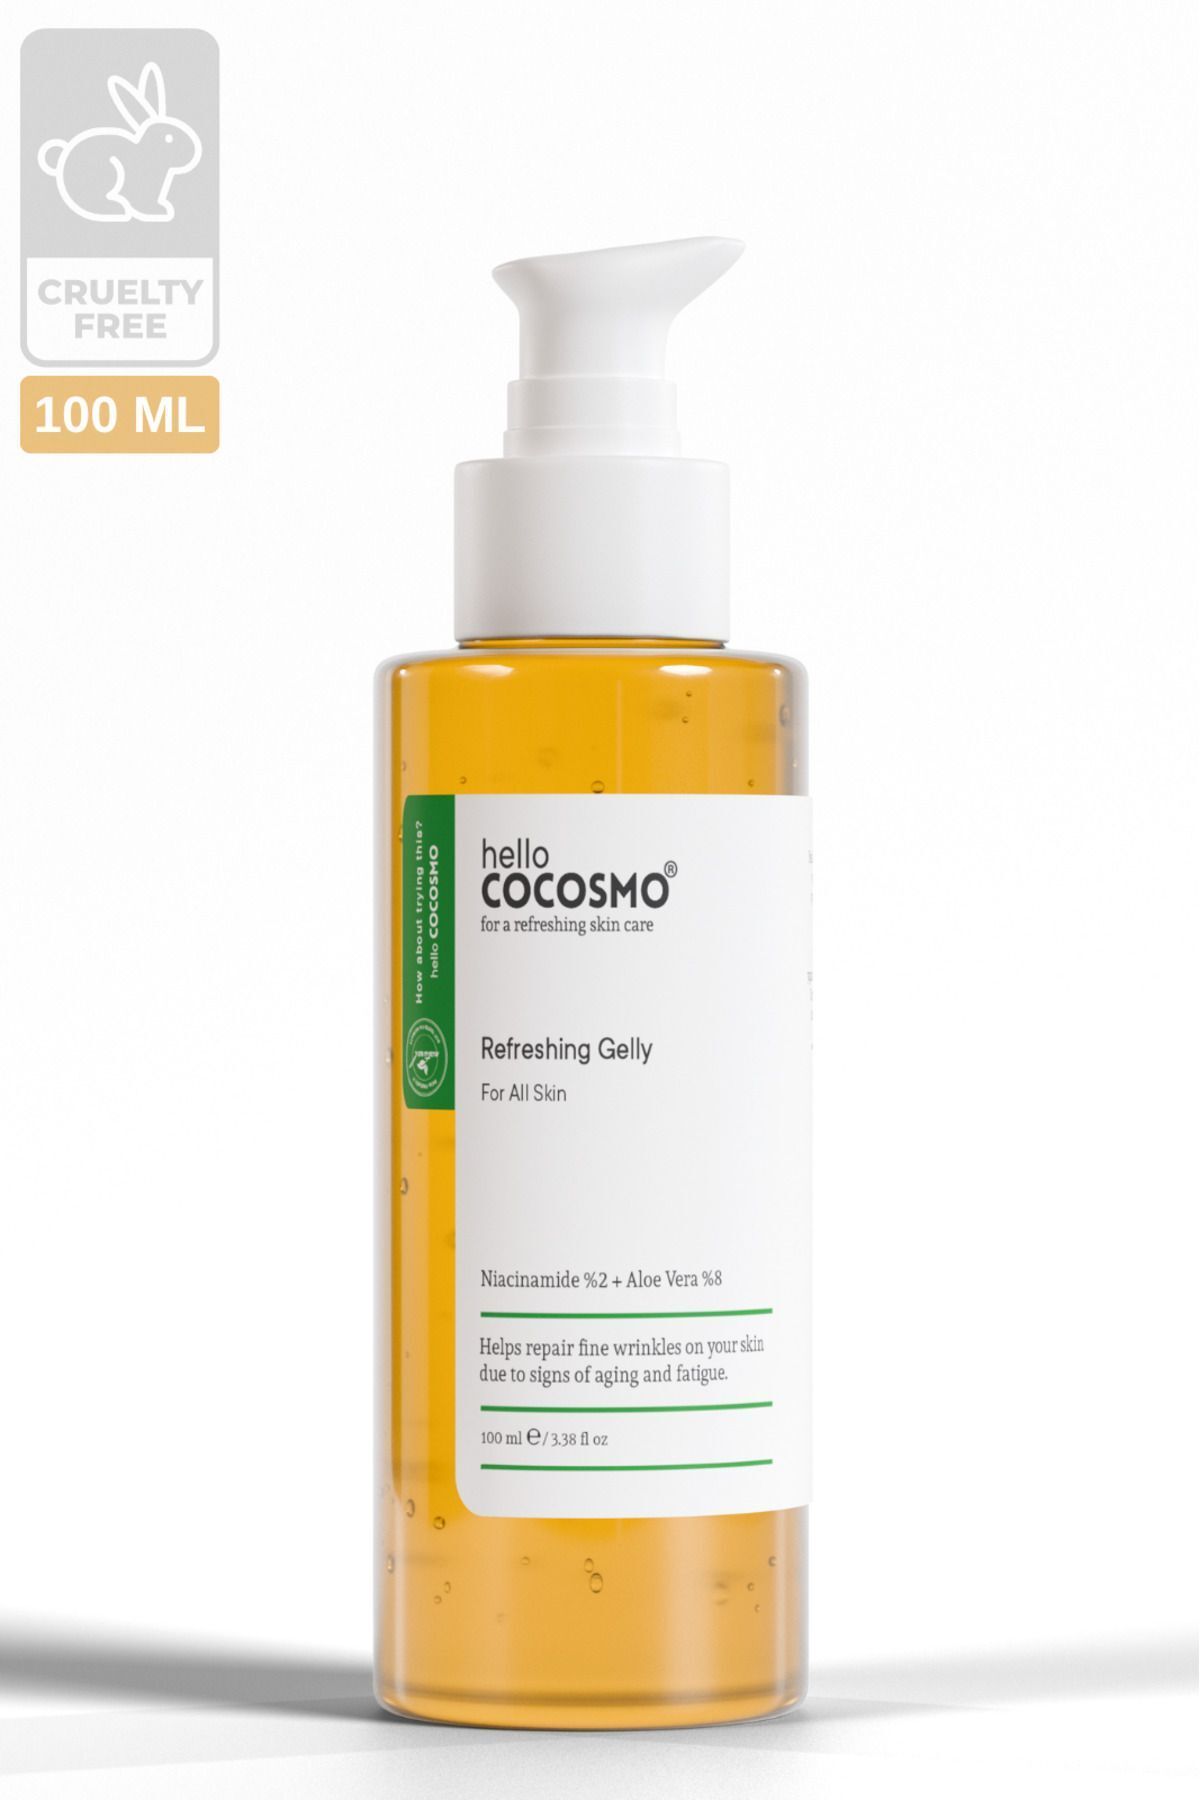 hello cocosmo Cilt Besleyici Dolgunlaştırıcı Yaşlanma Karşıtı (Niacinamide %2 + Aloe Vera %6) Jel Maske